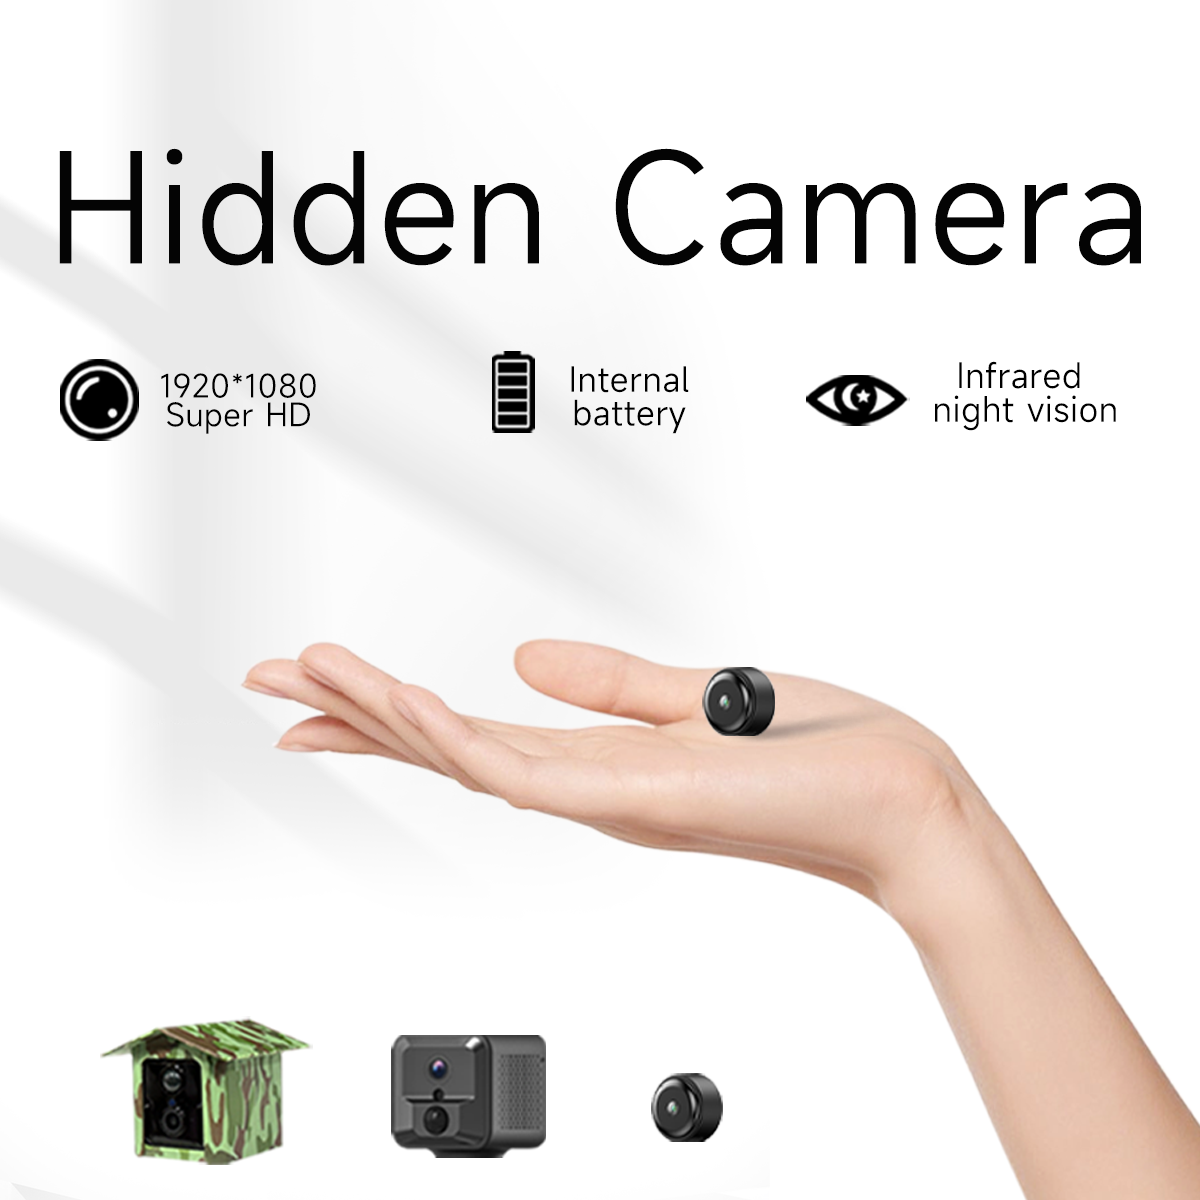 Hidden Camera